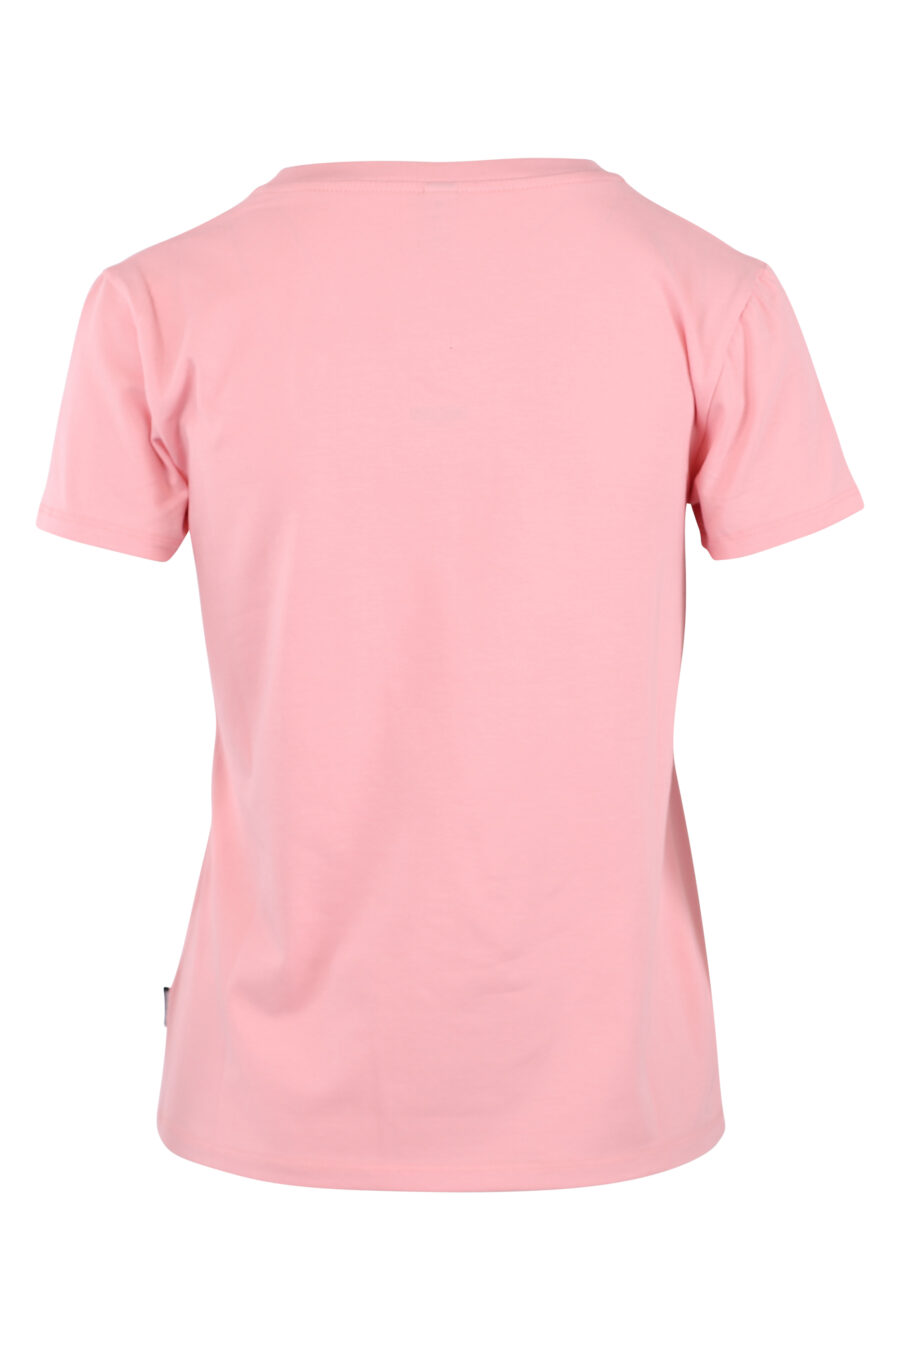 Rosa T-Shirt mit kleinem Bärenlogo - IMG 6238